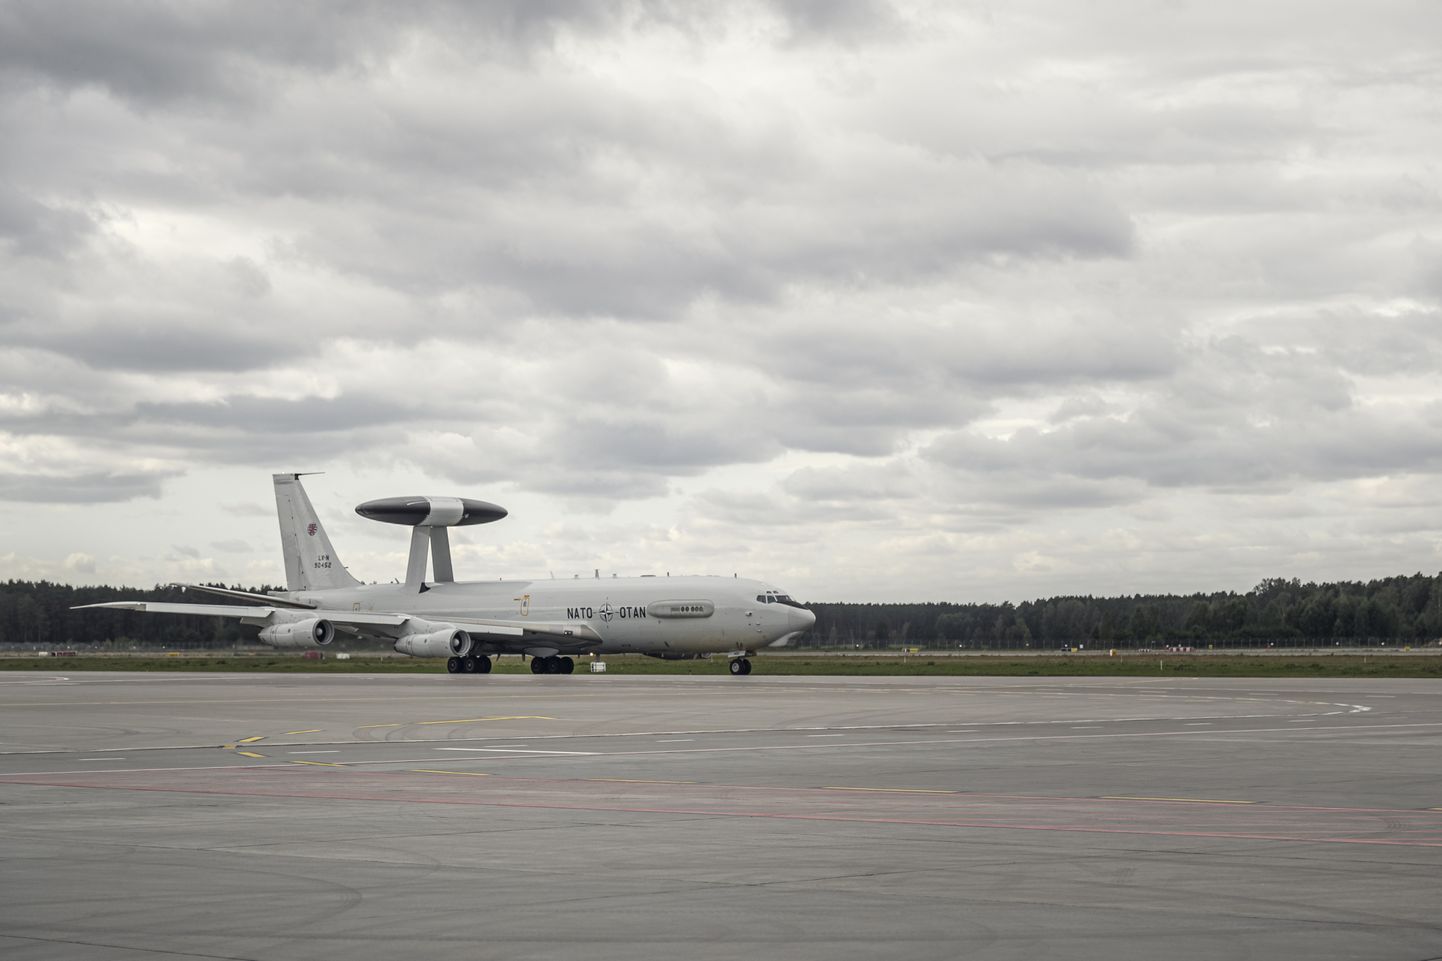 Rīgas lidostā nolaižas NATO agrīnās brīdināšanas un kontroles sistēmas lidmašīna. Ilustratīvs foto